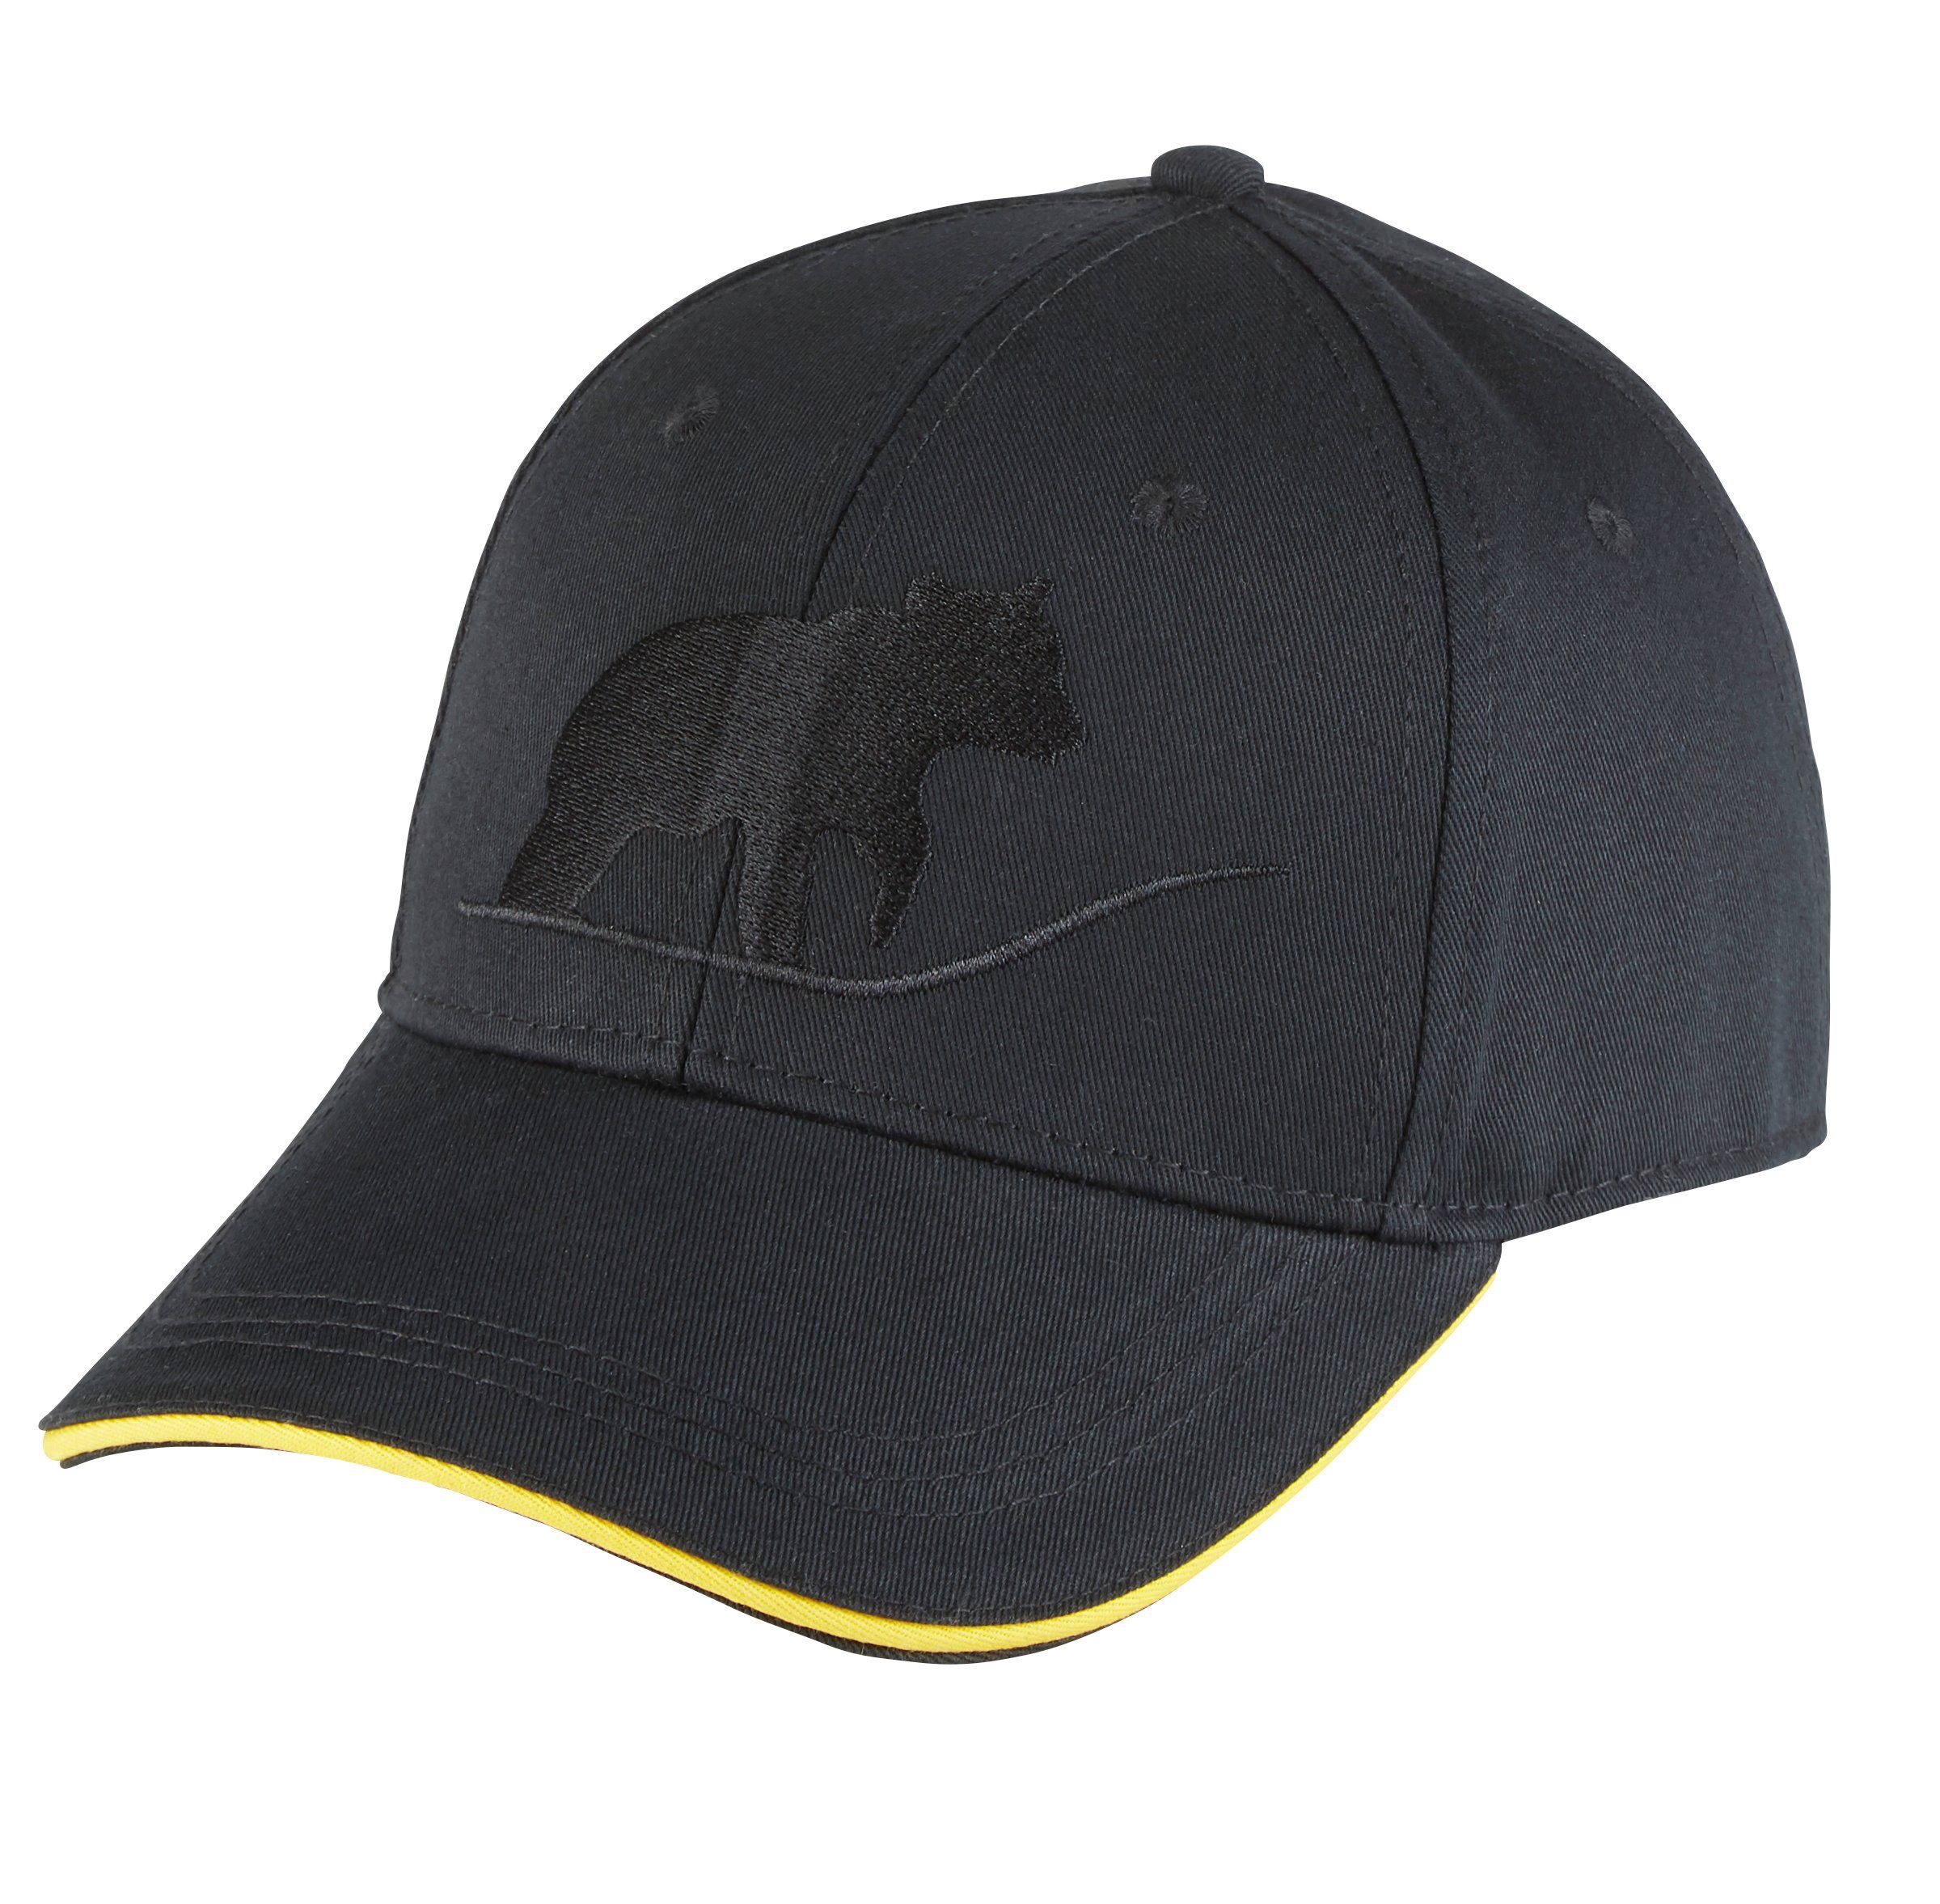 Northern Country Beauty Arbeiten Black Cap vor schützt größenverstellbar, beim Sonne Snapback